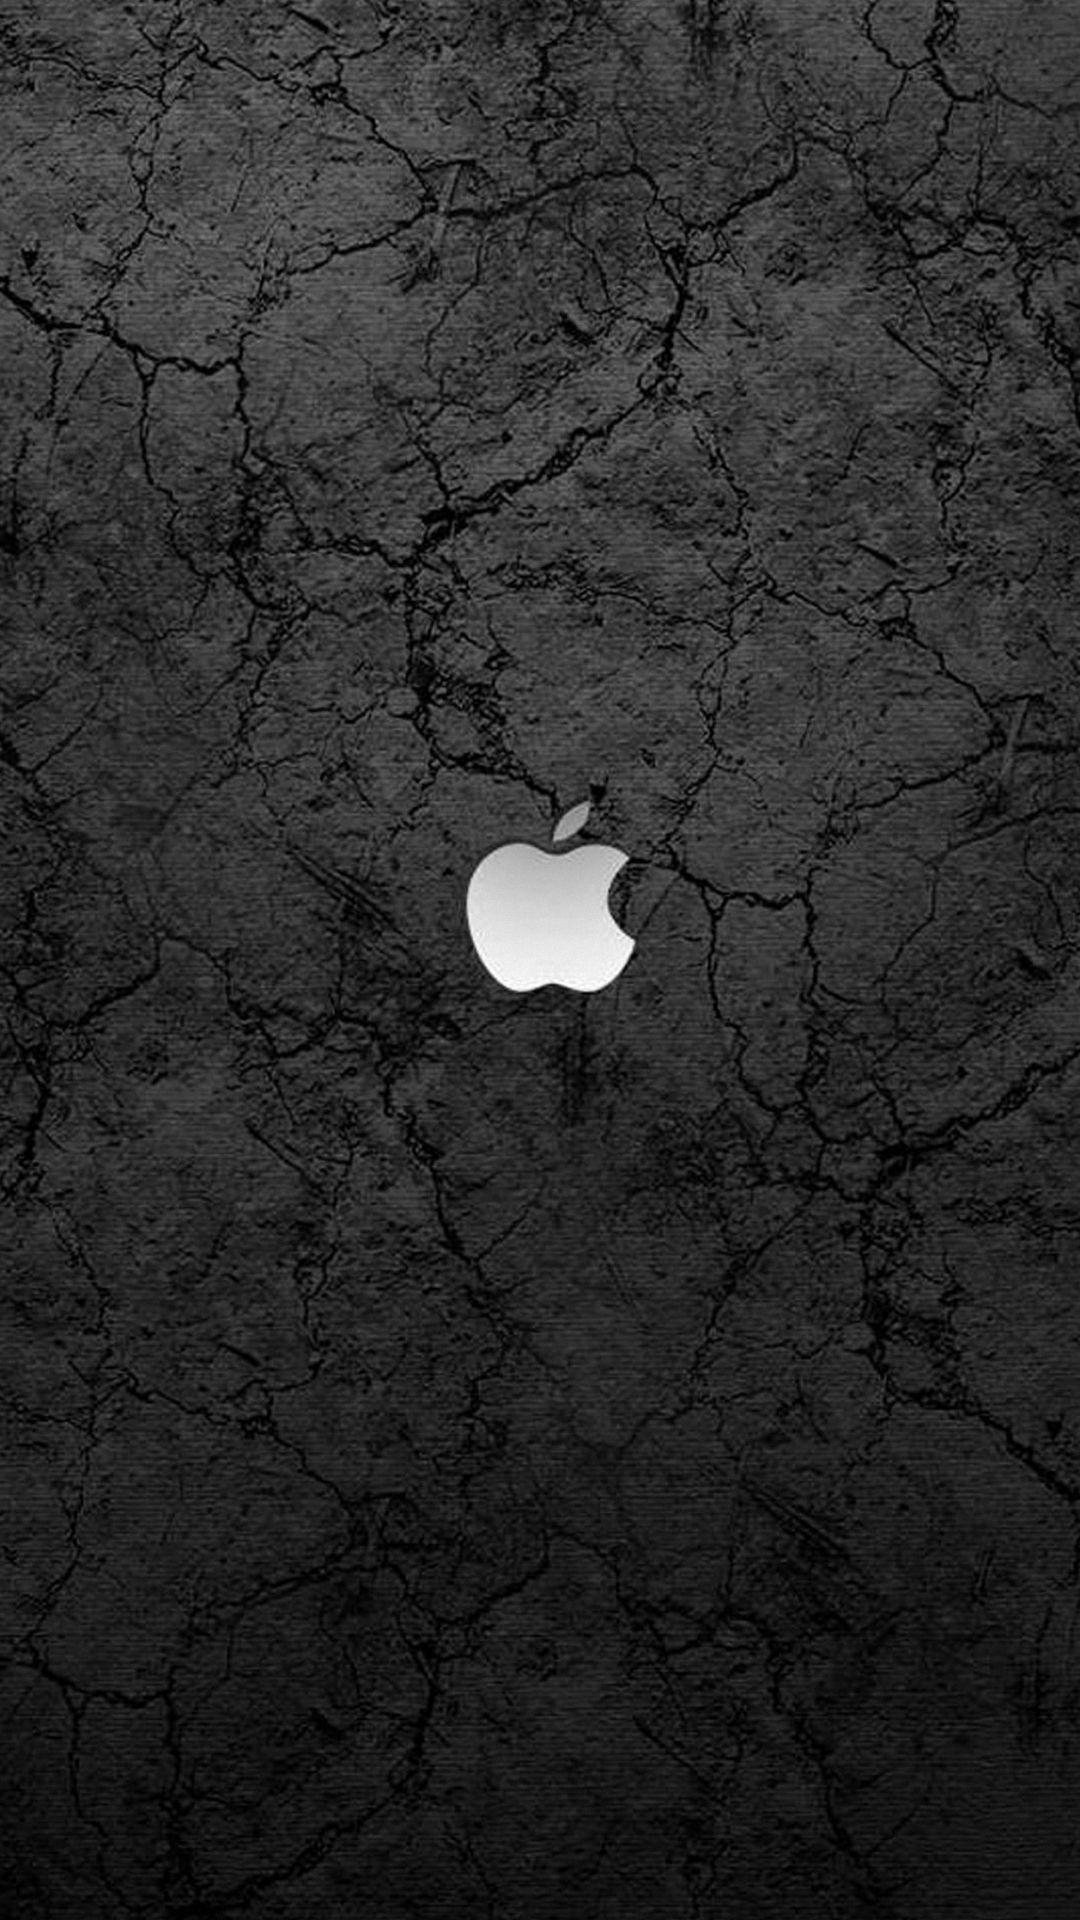 black white apple iphone 6 wallpaper HD. Apple Fever!